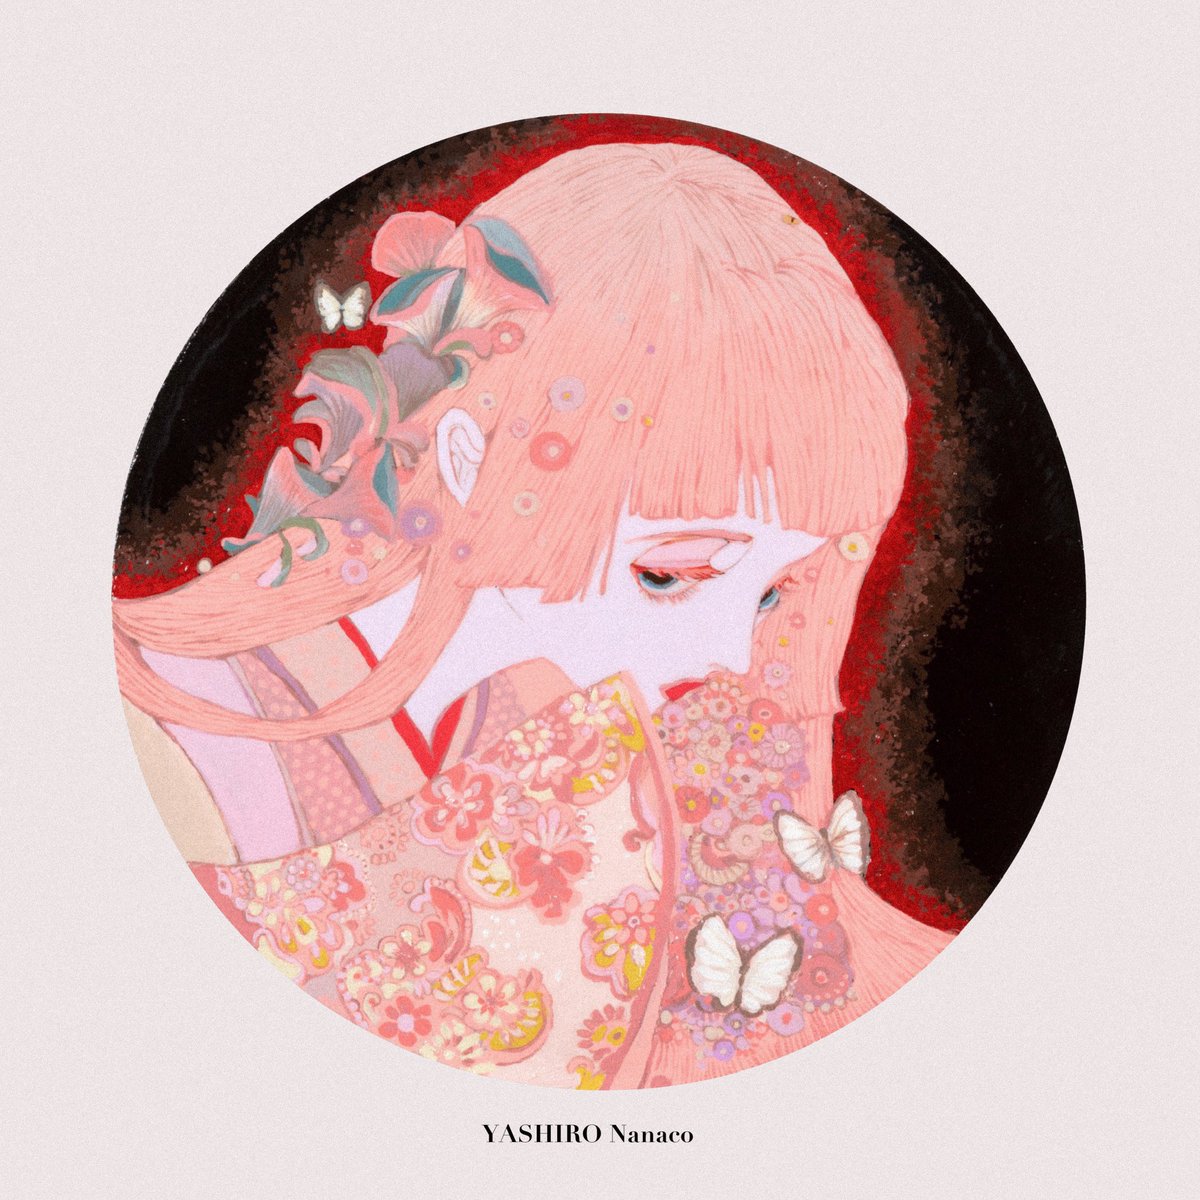 「2021〜2022「SHIROSA」「ゆめみつき」「鶴の娘」「花の髪」 」|YASHIRO Nanacoのイラスト